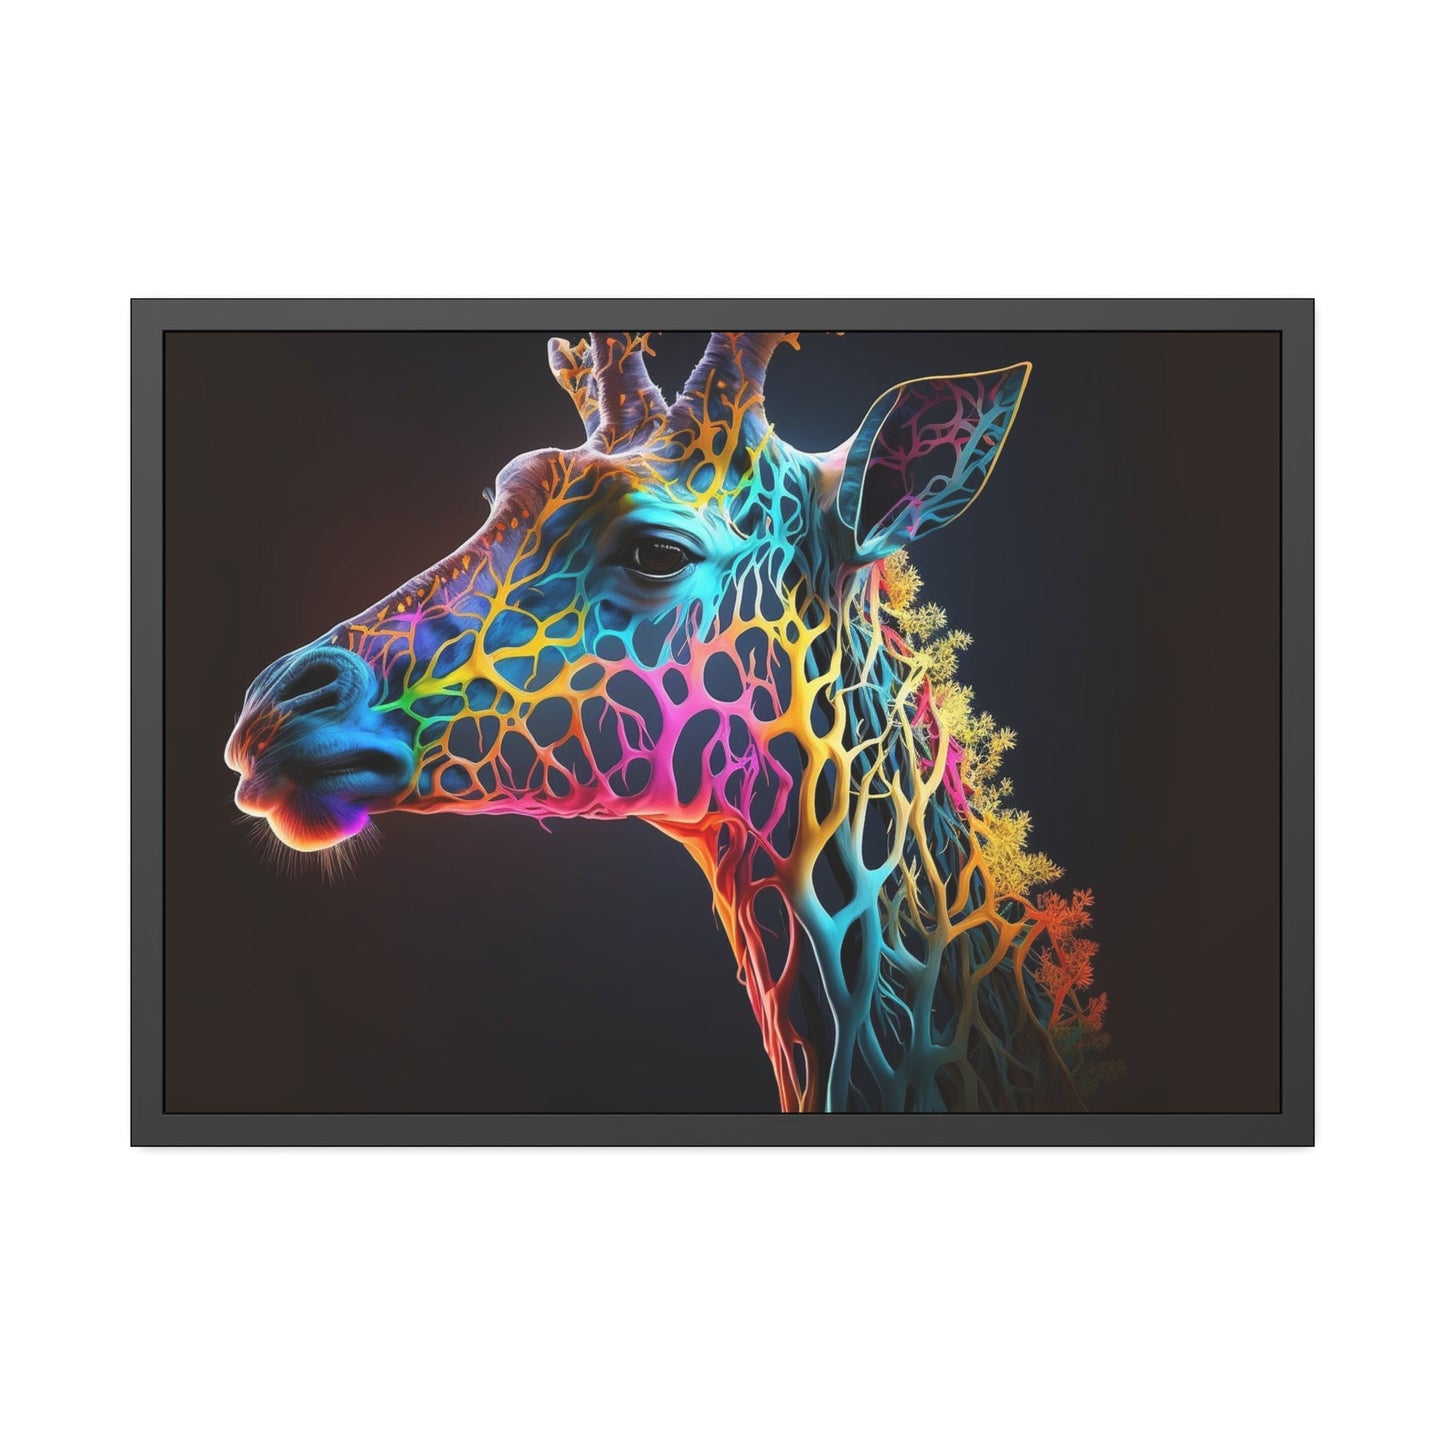 Giraffe Portrait: Stunning Art on a Framed Canvas Featuring a Close-Up of a Giraffe